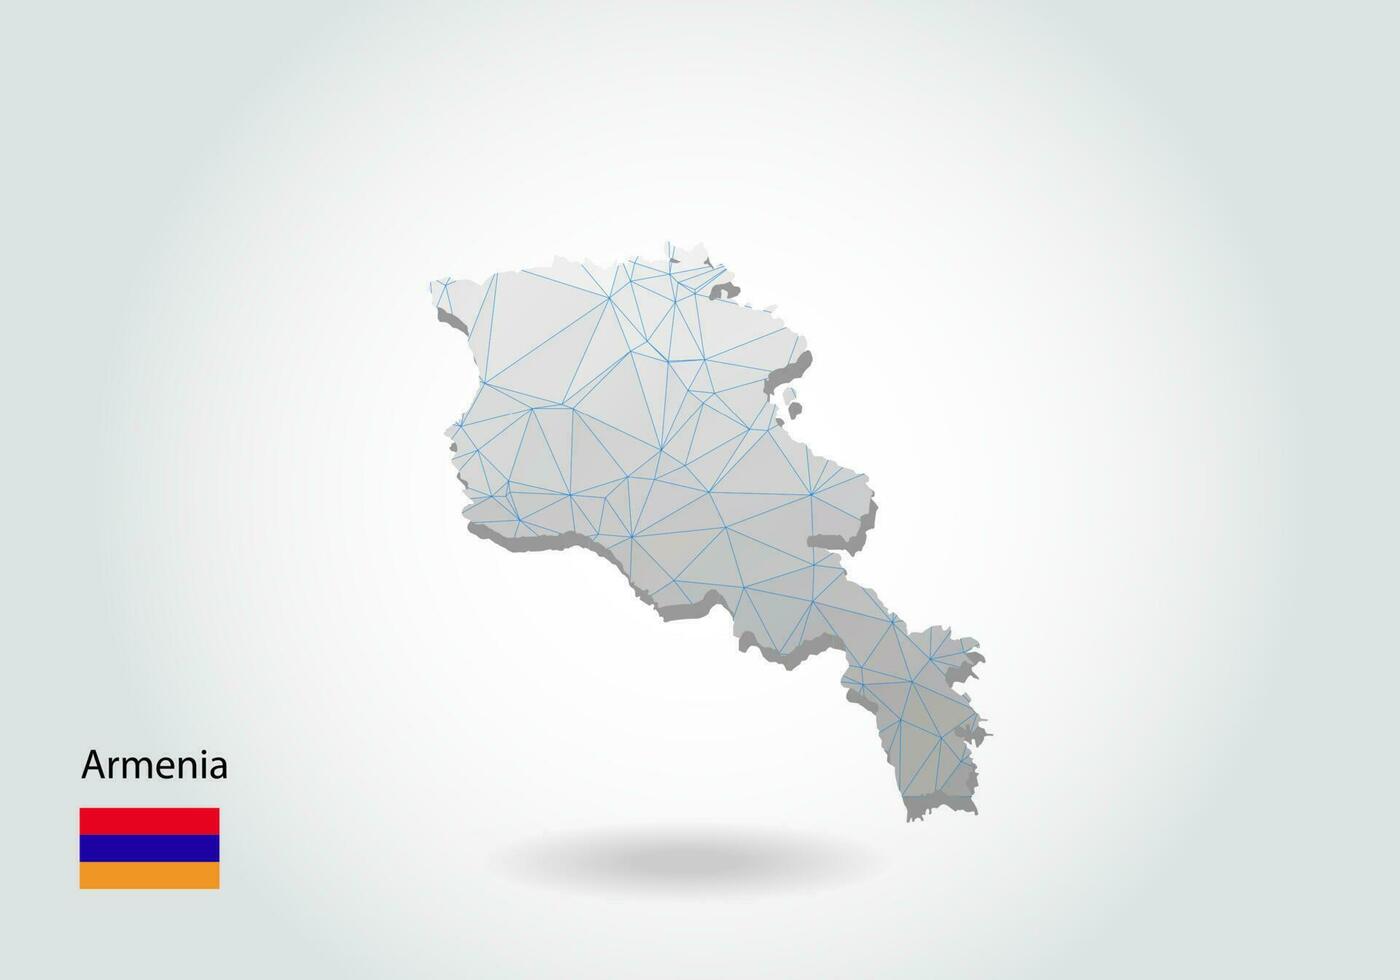 mappa vettoriale dell'armenia con design a triangoli alla moda in stile poligonale su sfondo scuro, forma della mappa in moderno stile artistico 3d con taglio di carta. disegno di ritaglio di carta a strati.